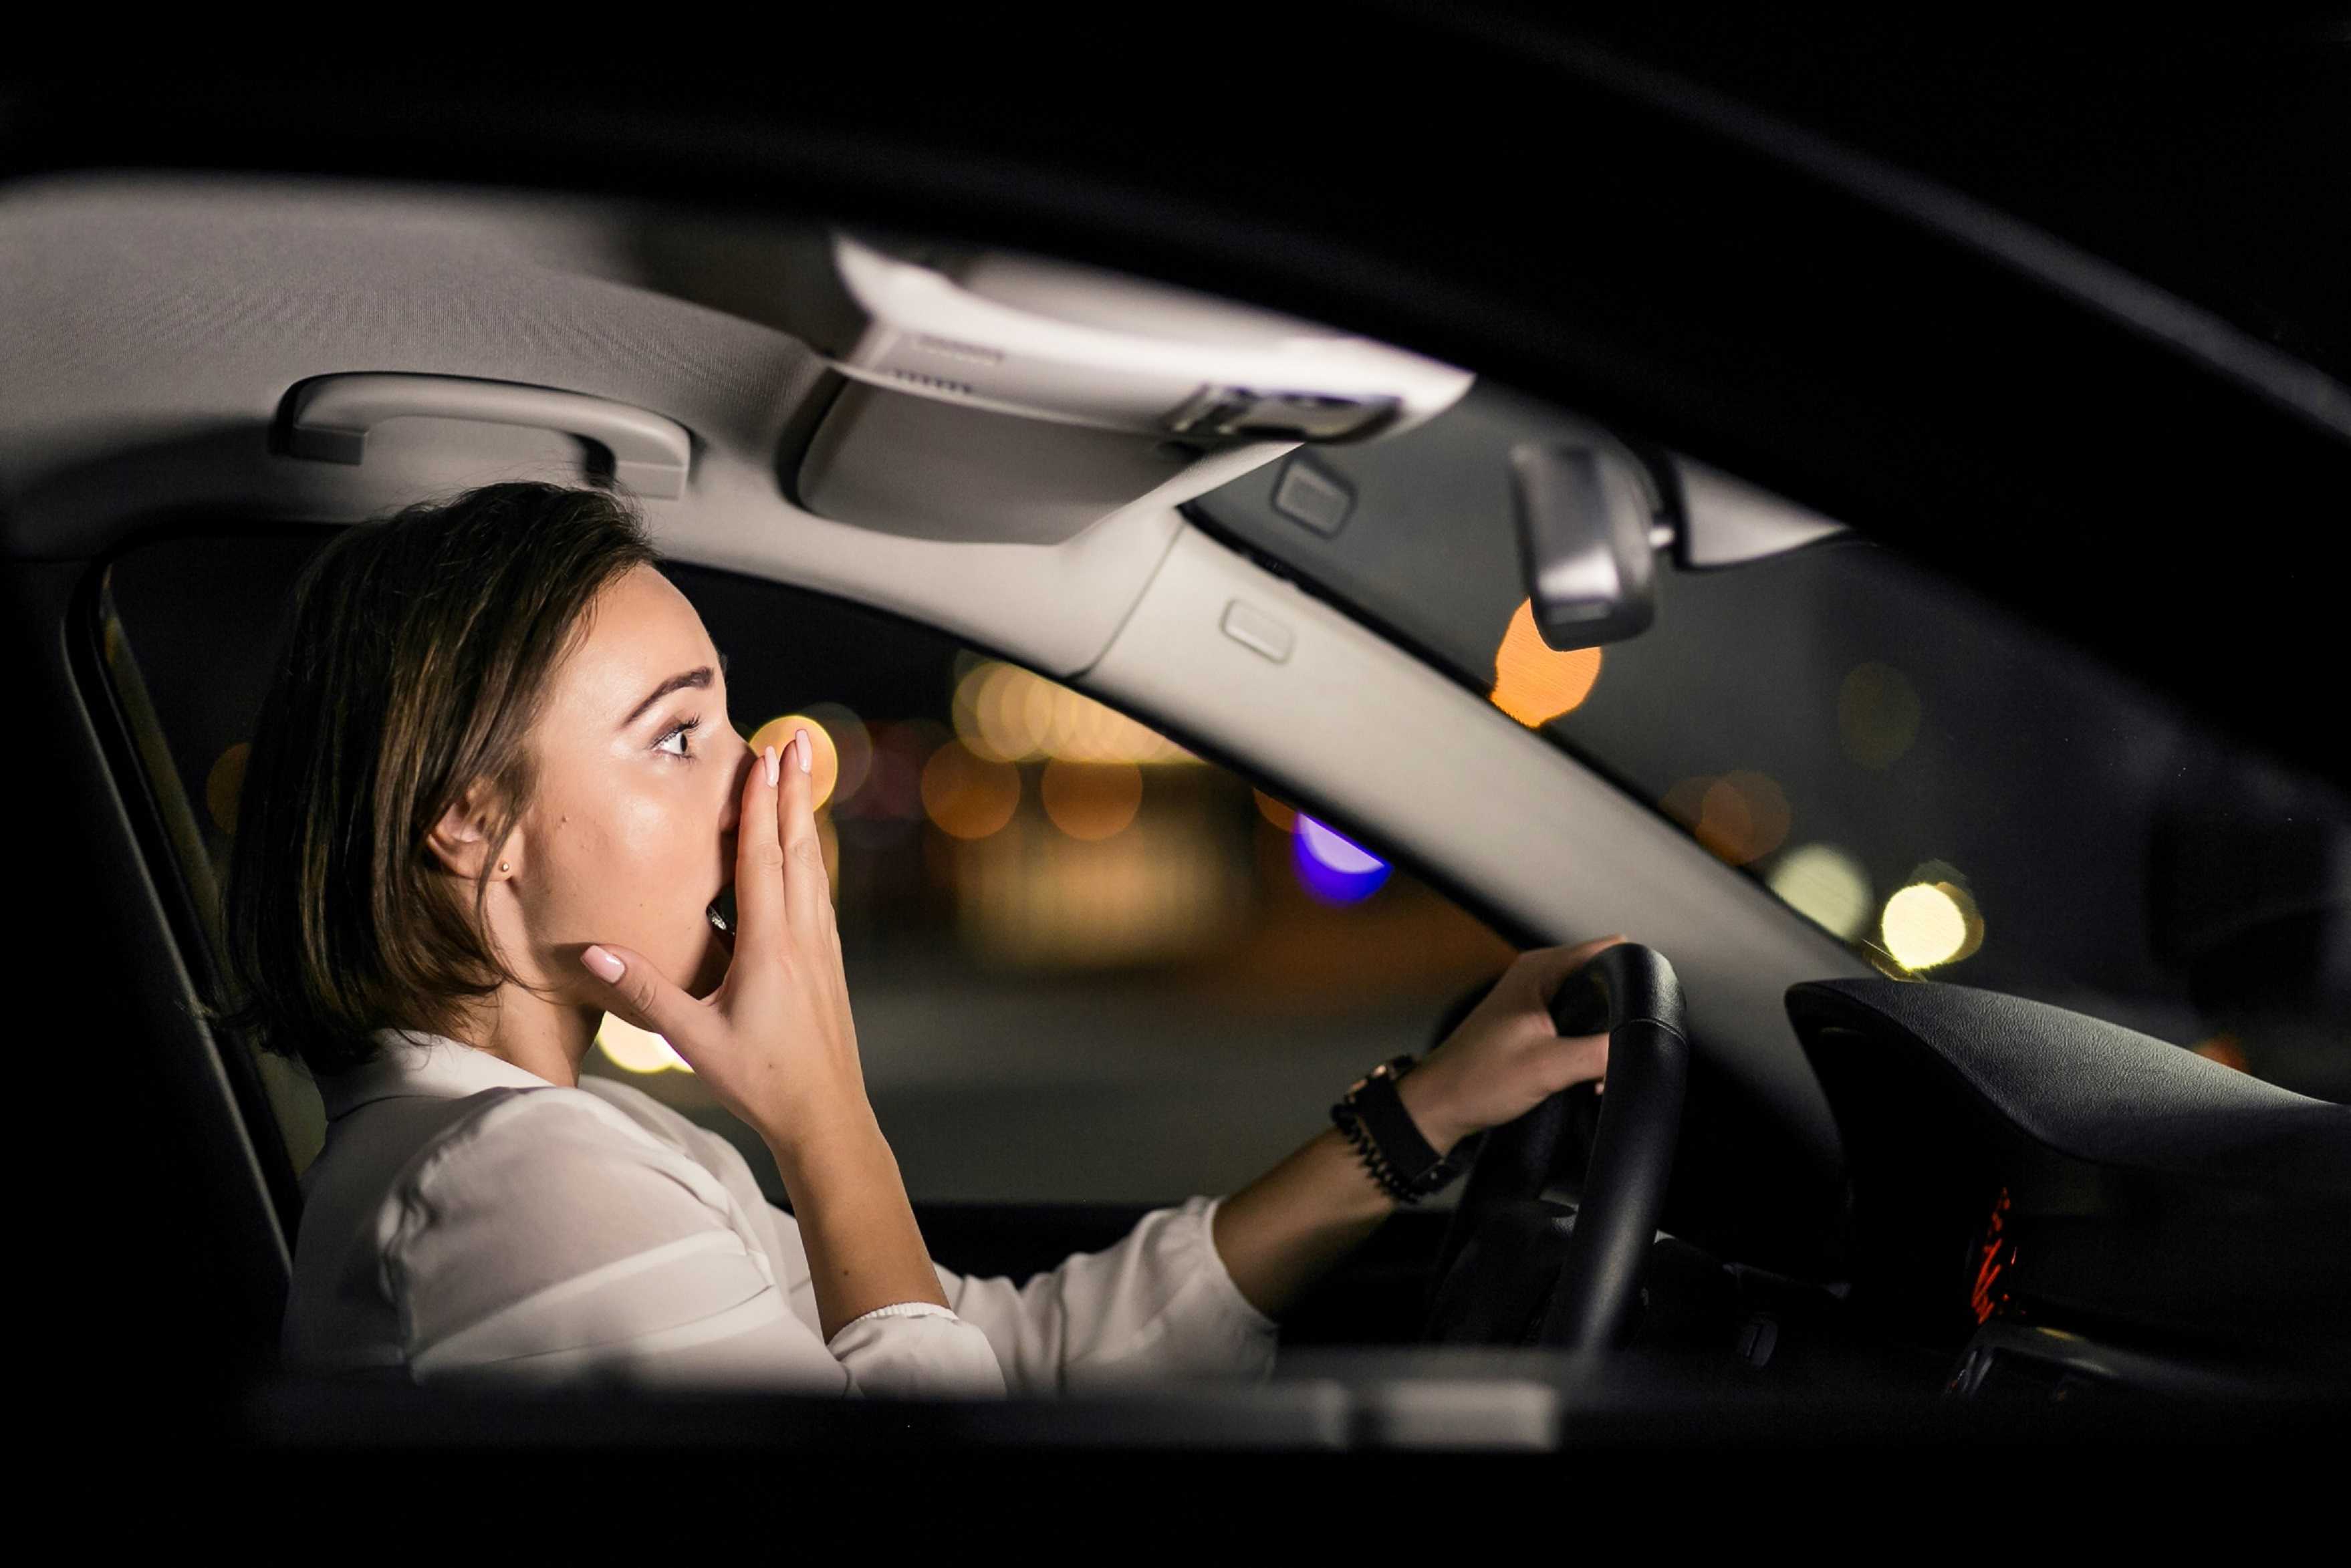 Как побороть страх вождения автомобиля новичку и женщине в городе самостоятельно